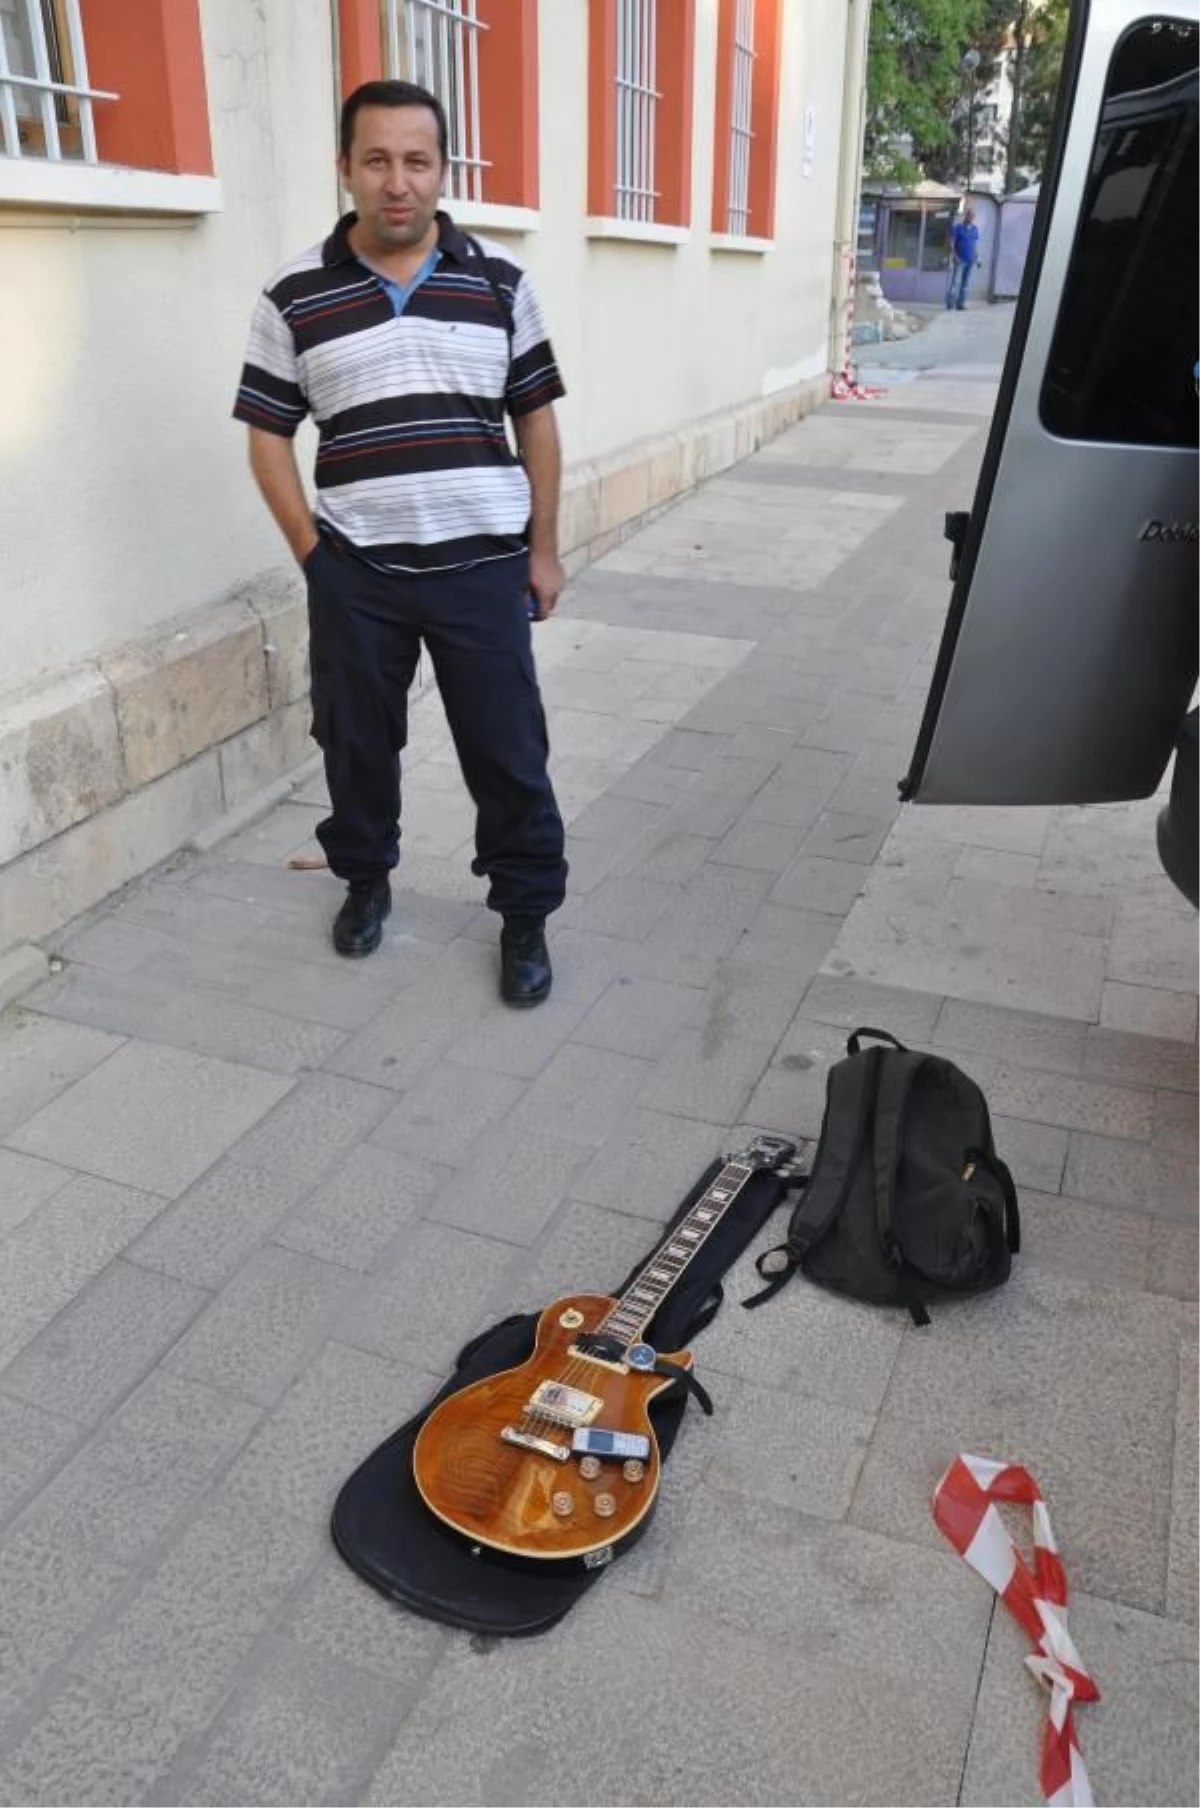 MİT Önünde Unutulan Çantadan Elektro Gitar Çıktı